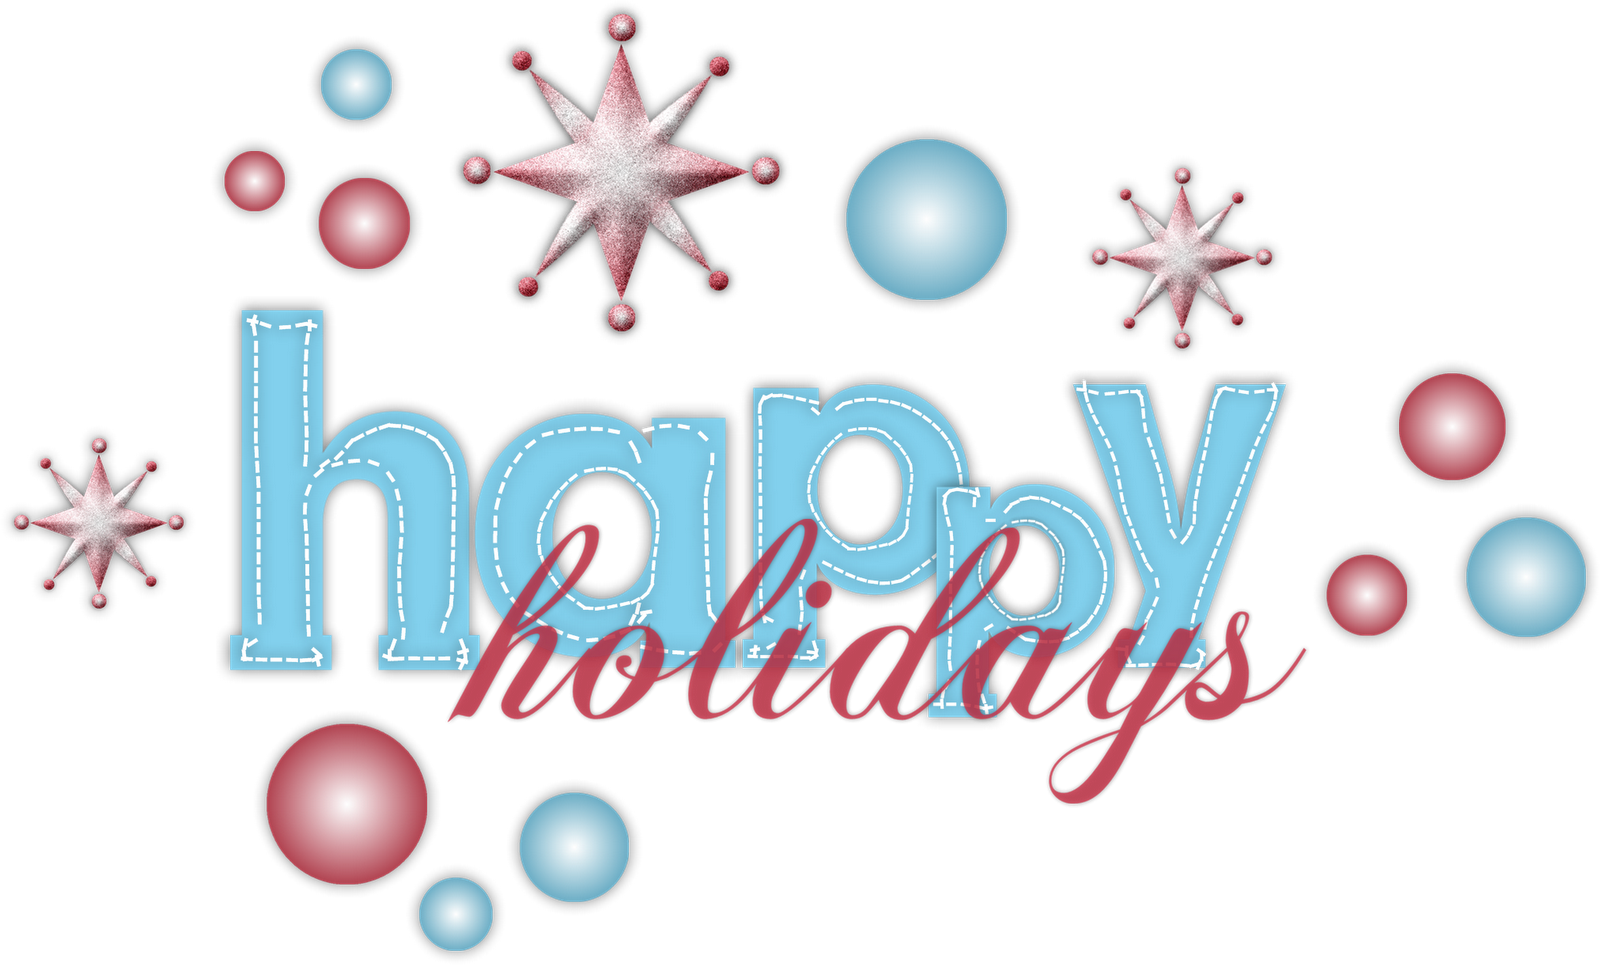 clip art happy holidays sign - photo #20